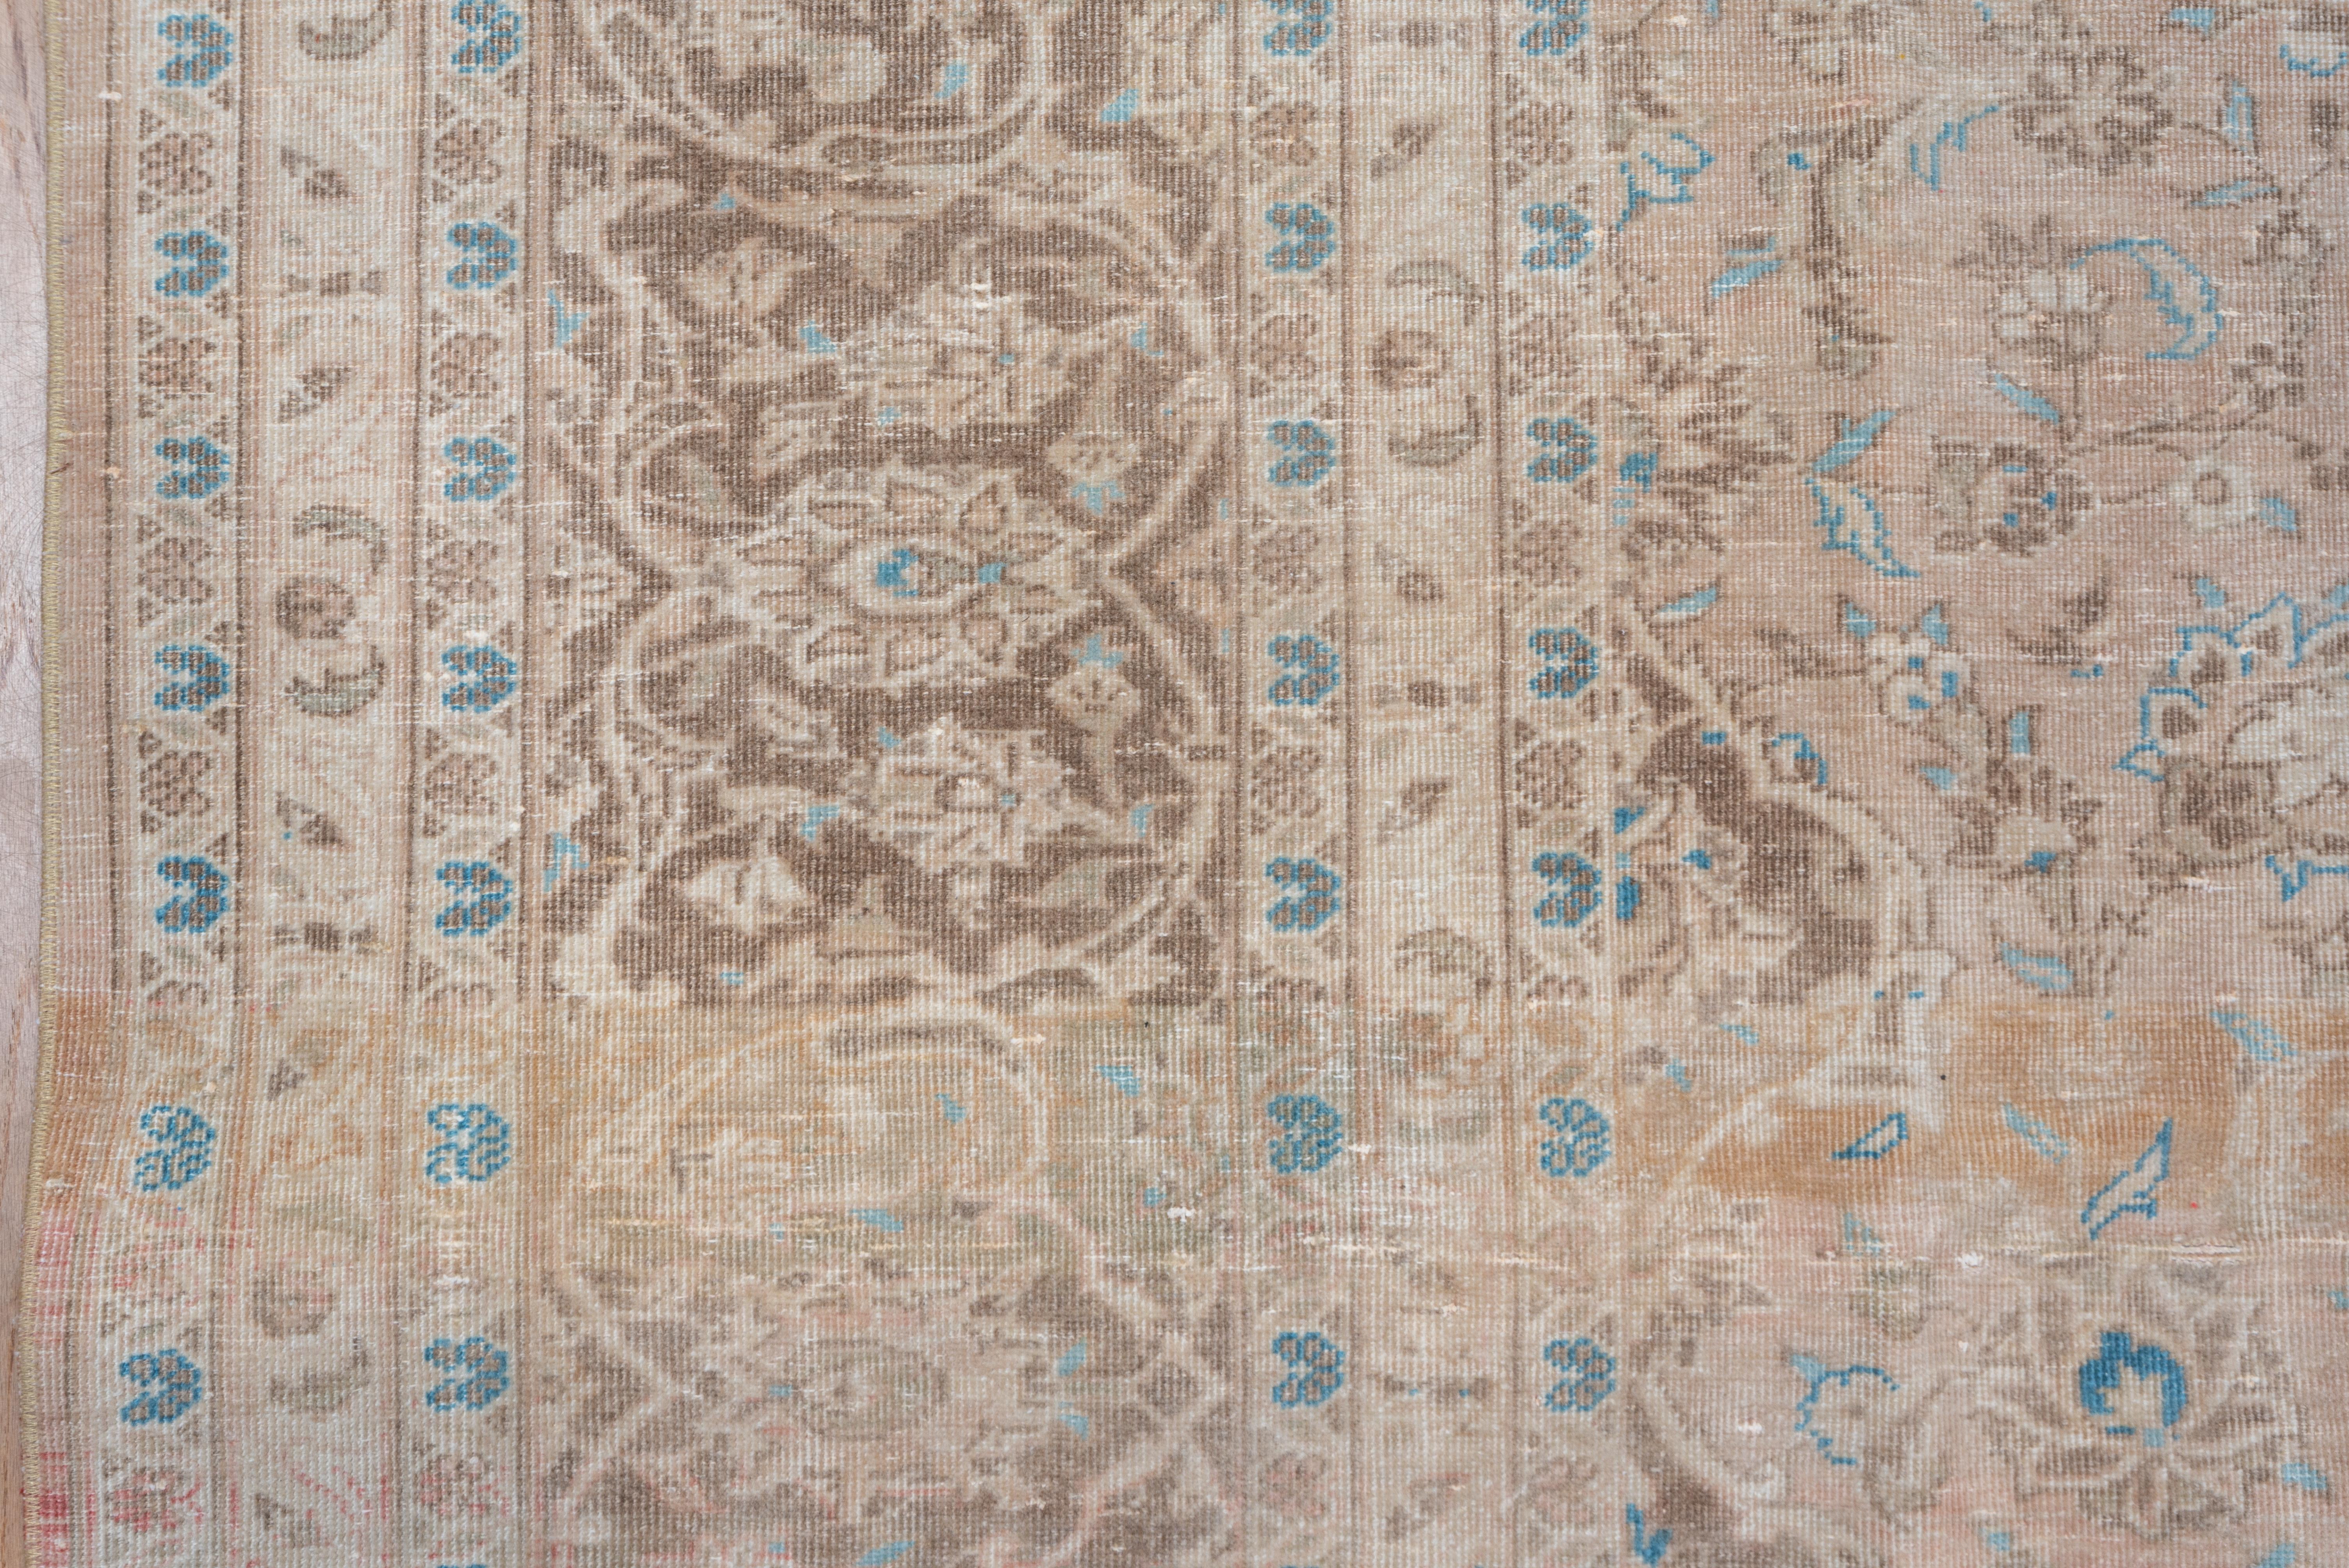 Dieser osttürkische Medaillonteppich im Stil von Täbris zeigt ein geschichtetes rotbraunes, cremefarbenes und mittelblaues Medaillon auf einem abraschierten, buff-tanfarbenen, mit Palmetten, Doppelranken und gespaltenen Arabesken verzierten Feld in